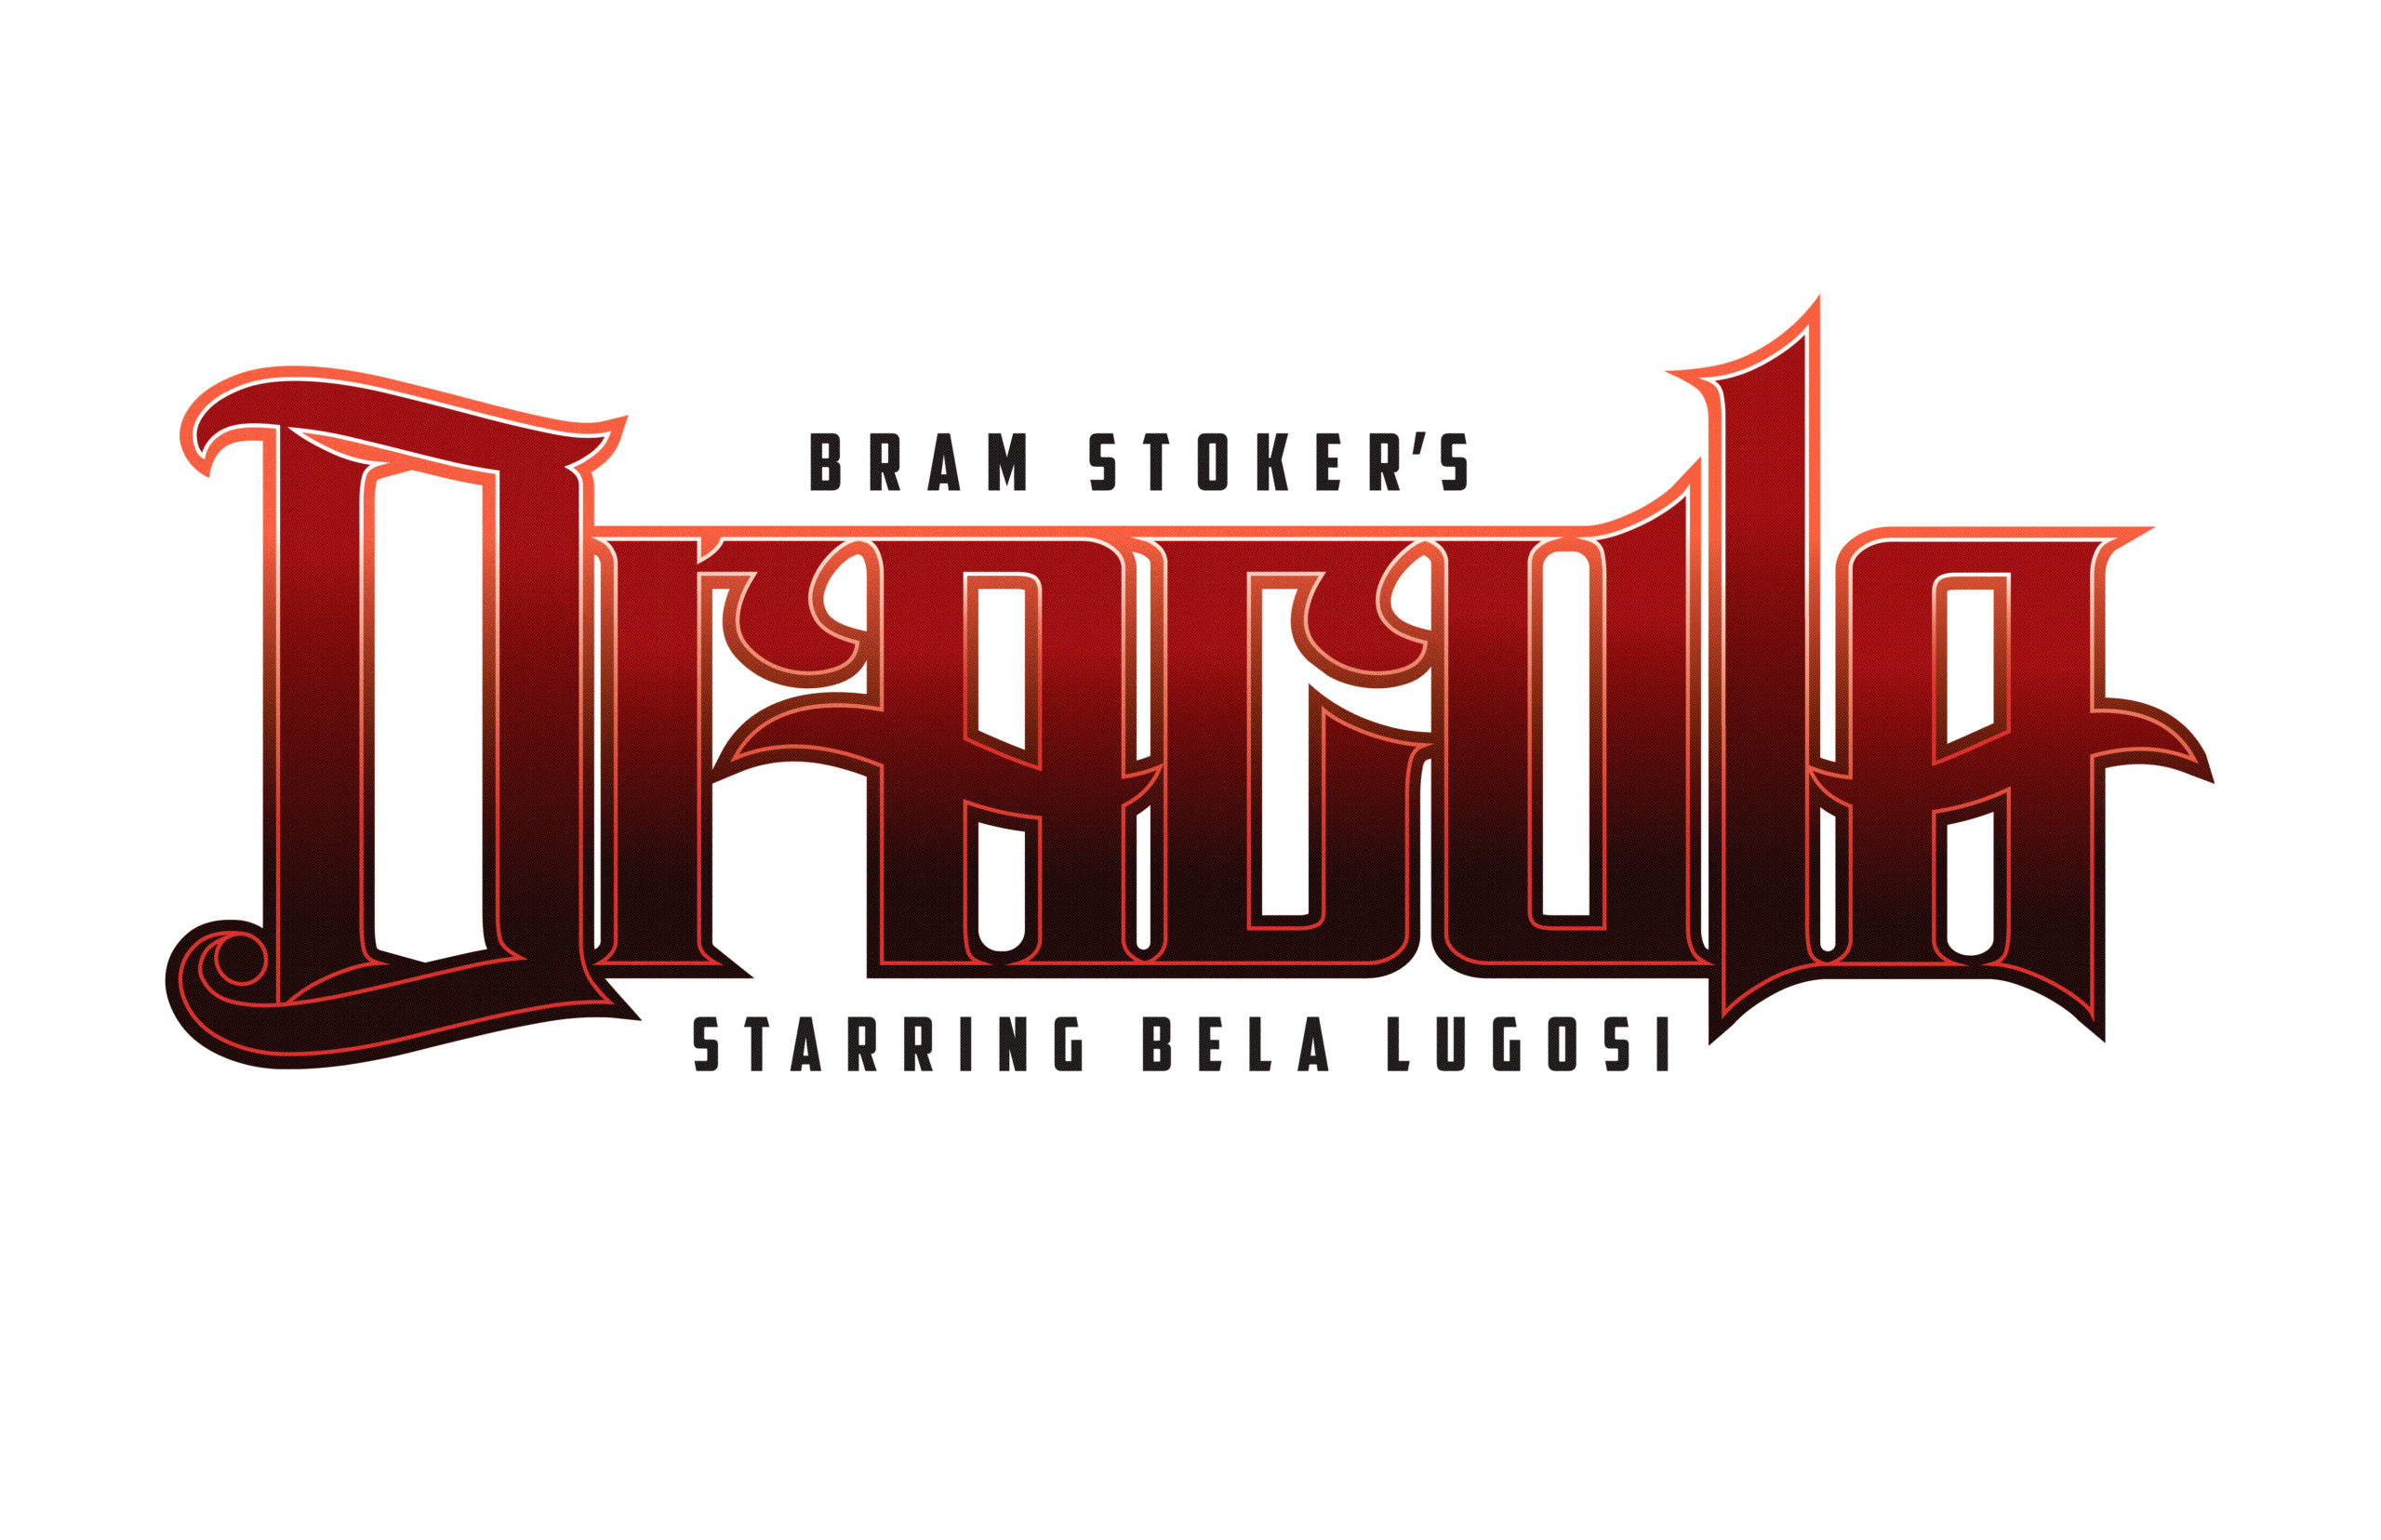 Bram Stoker’s Dracula Graphic Novel Motion Trailer